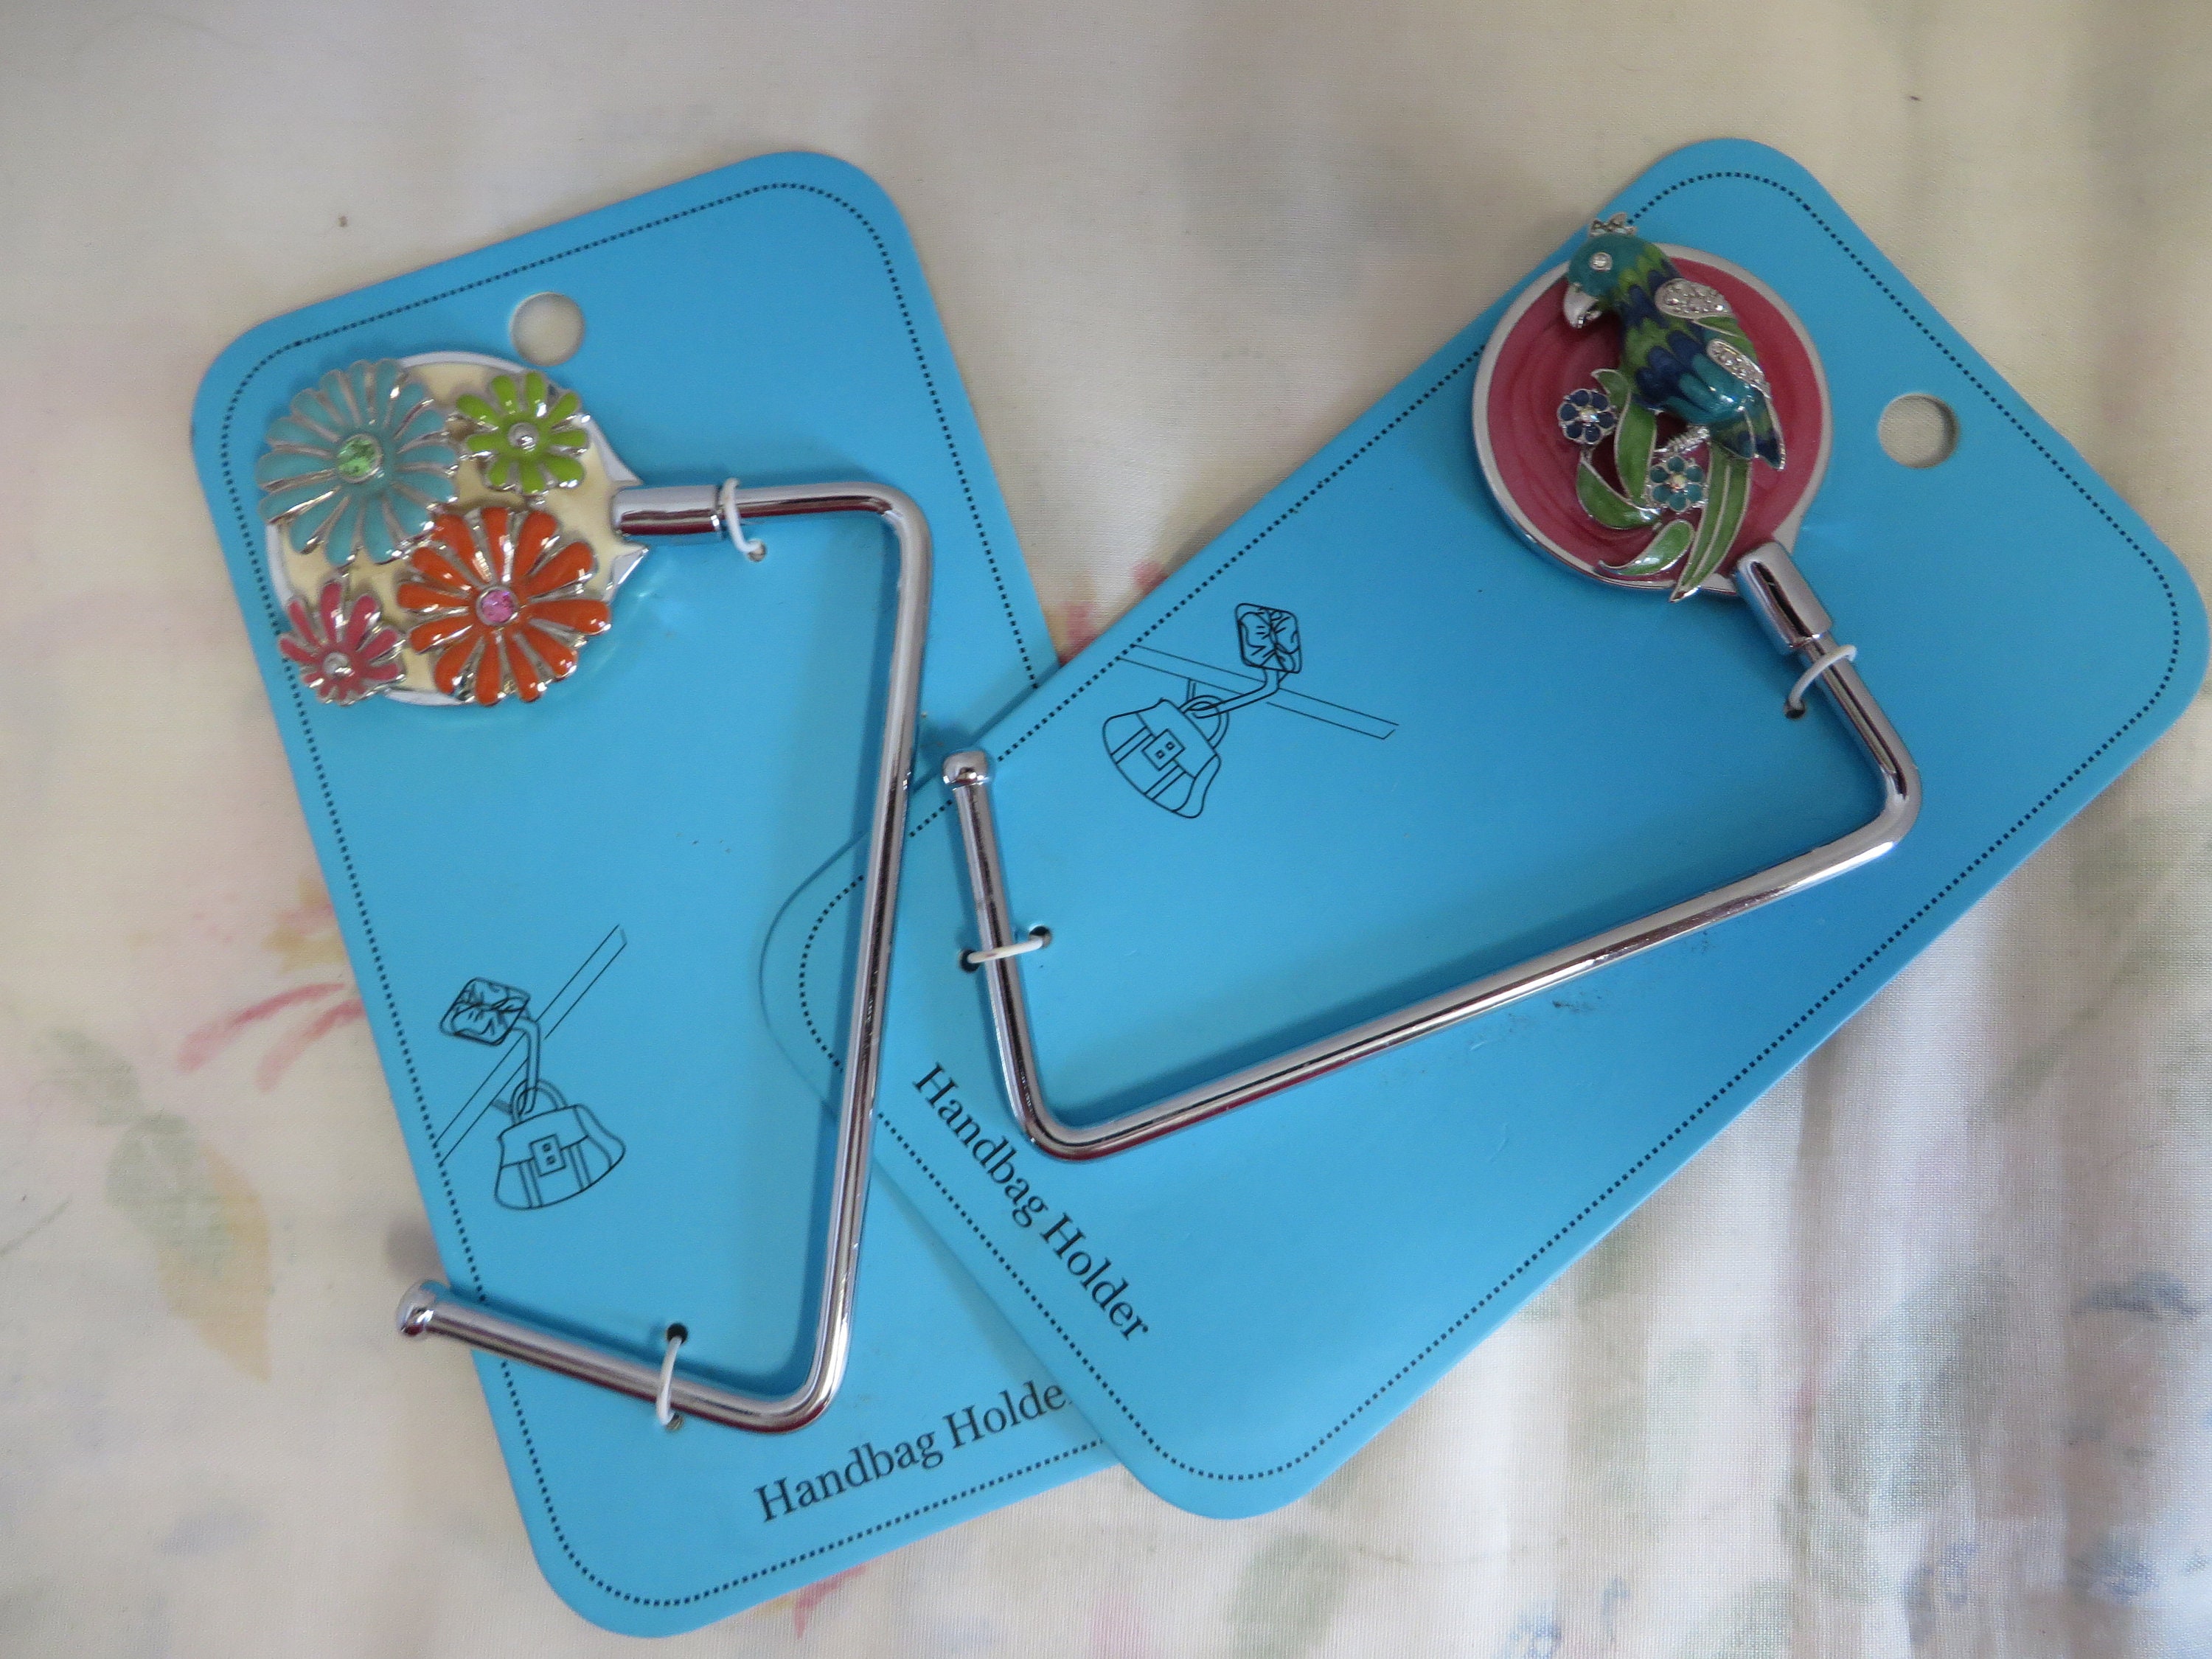 Handbag Holder Magnetic Swivel Silverplate Purse Hook for Restaurant Table